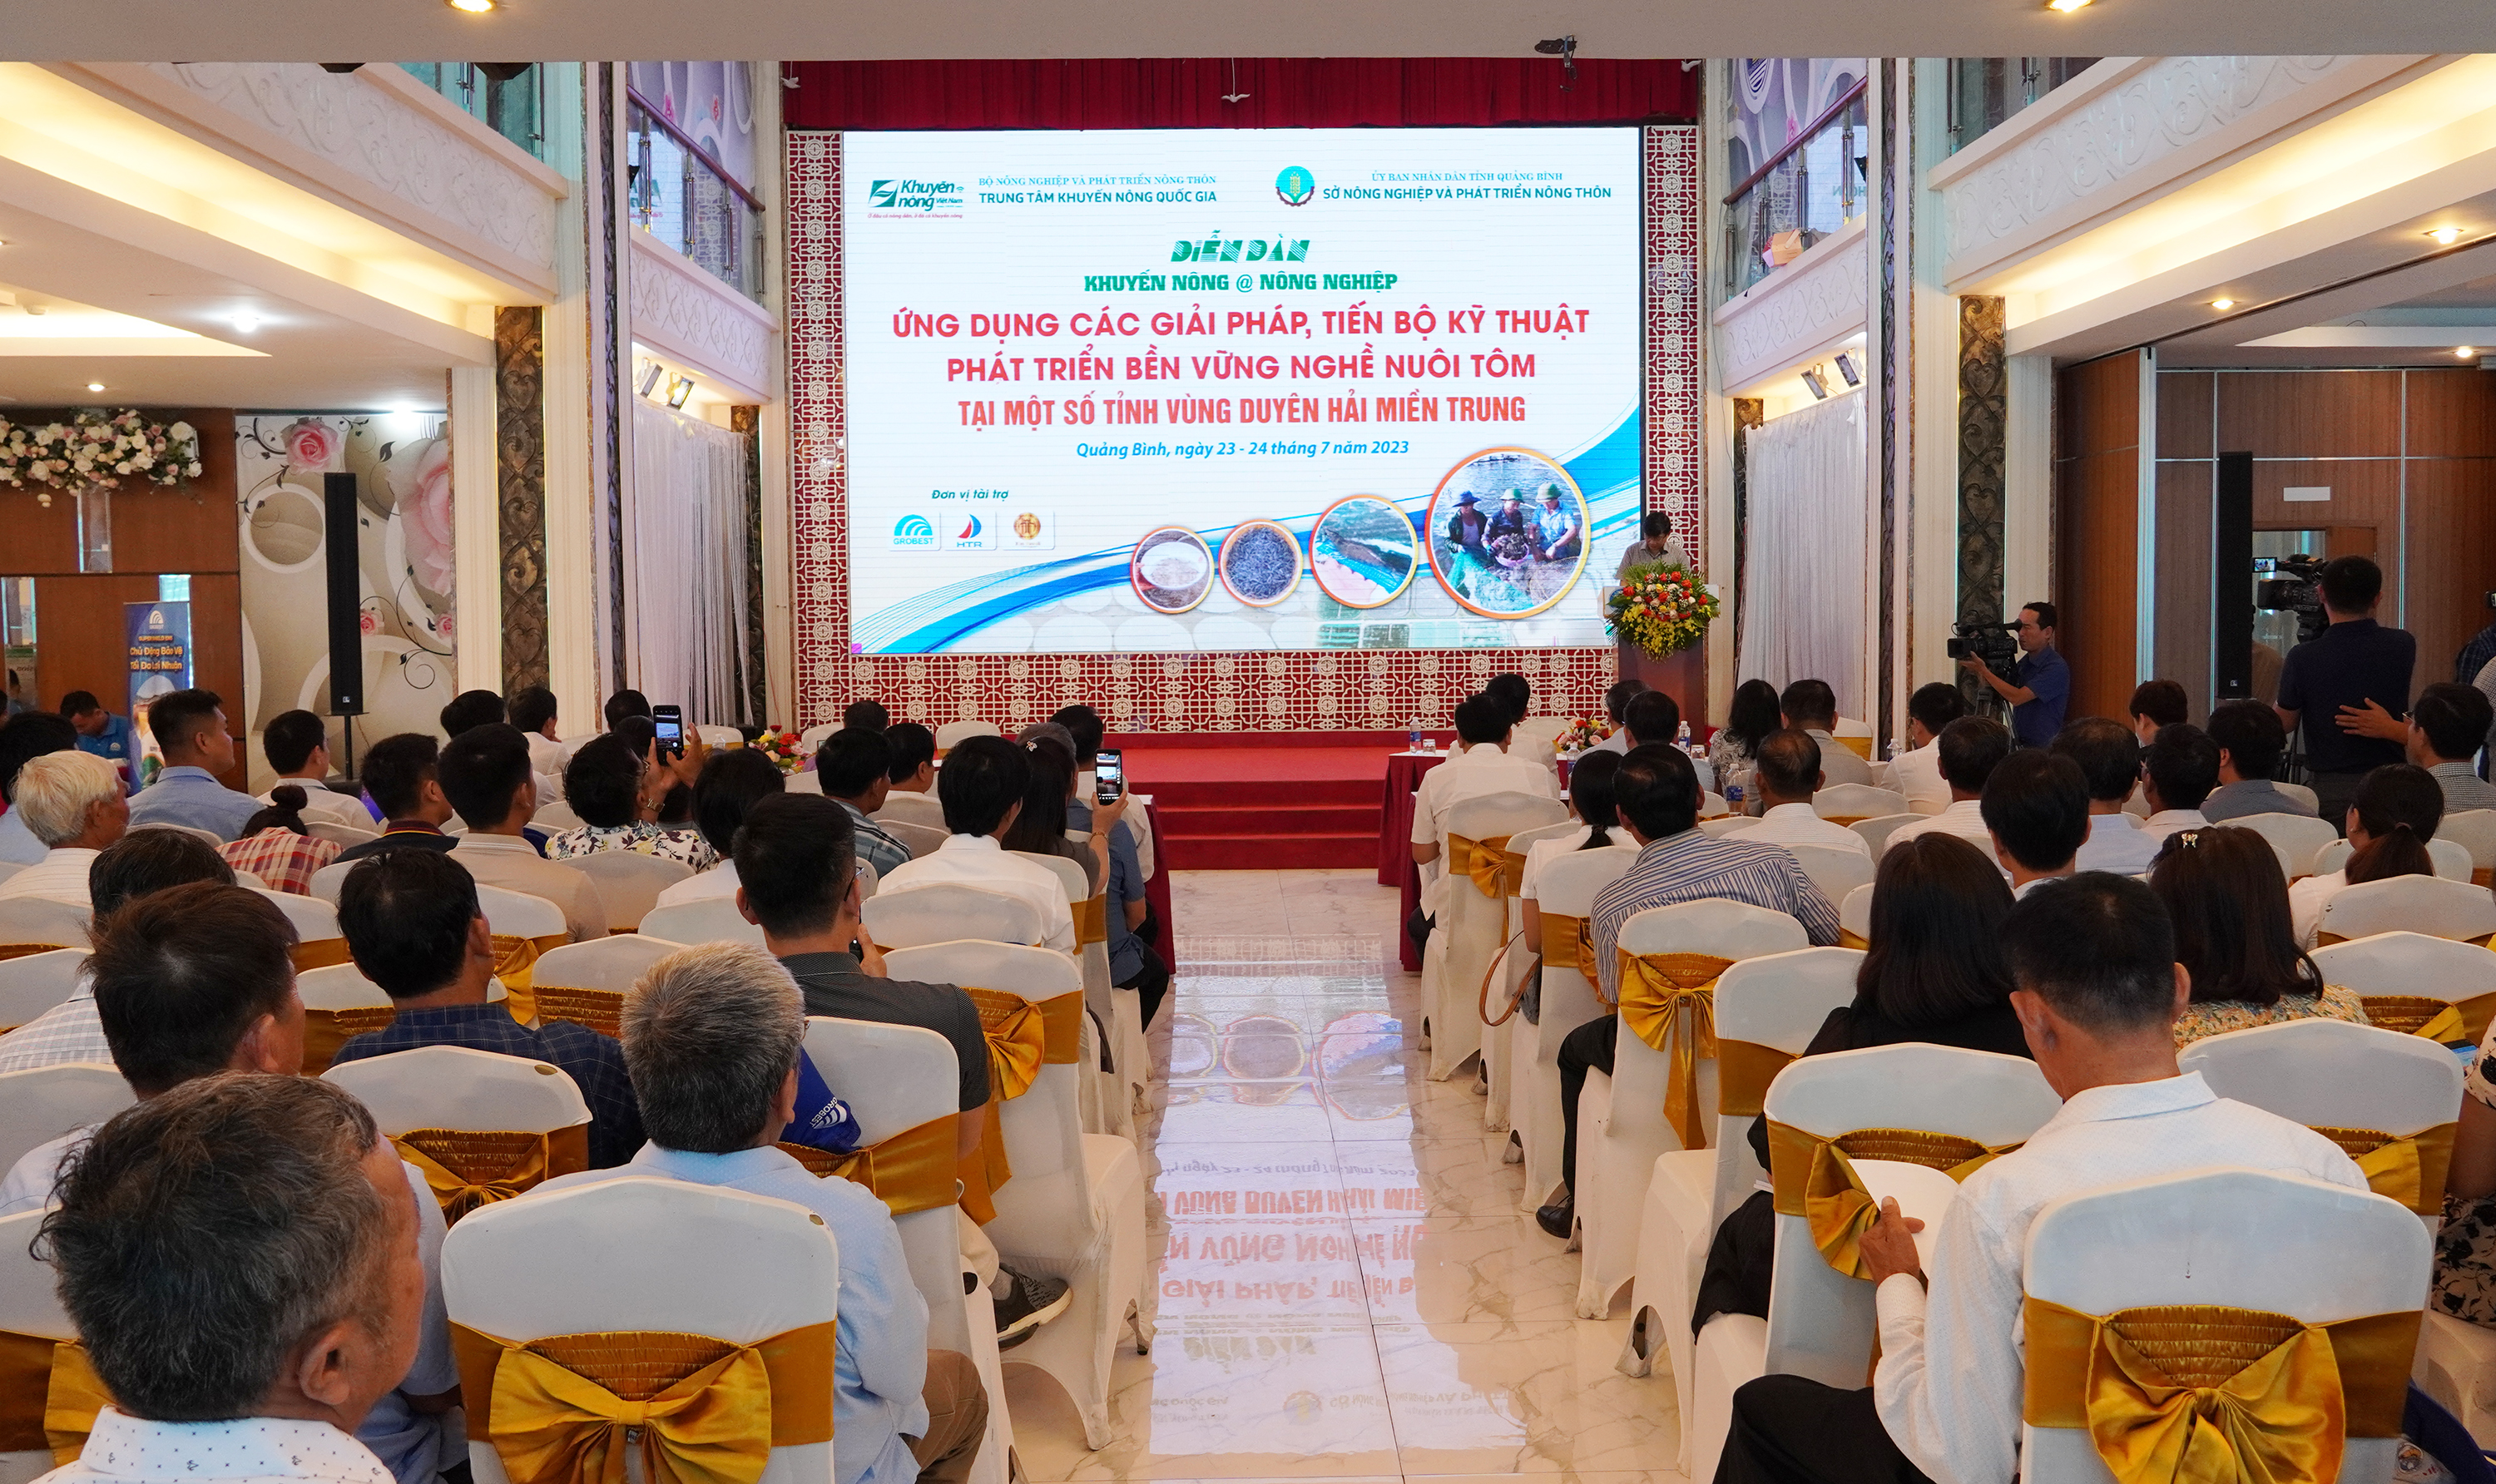 Diễn đàn "Ứng dụng các giải pháp, tiến bộ kỹ thuật phát triển bền vững nghề nuôi tôm tại một số tỉnh vùng duyên hải miền Trung"